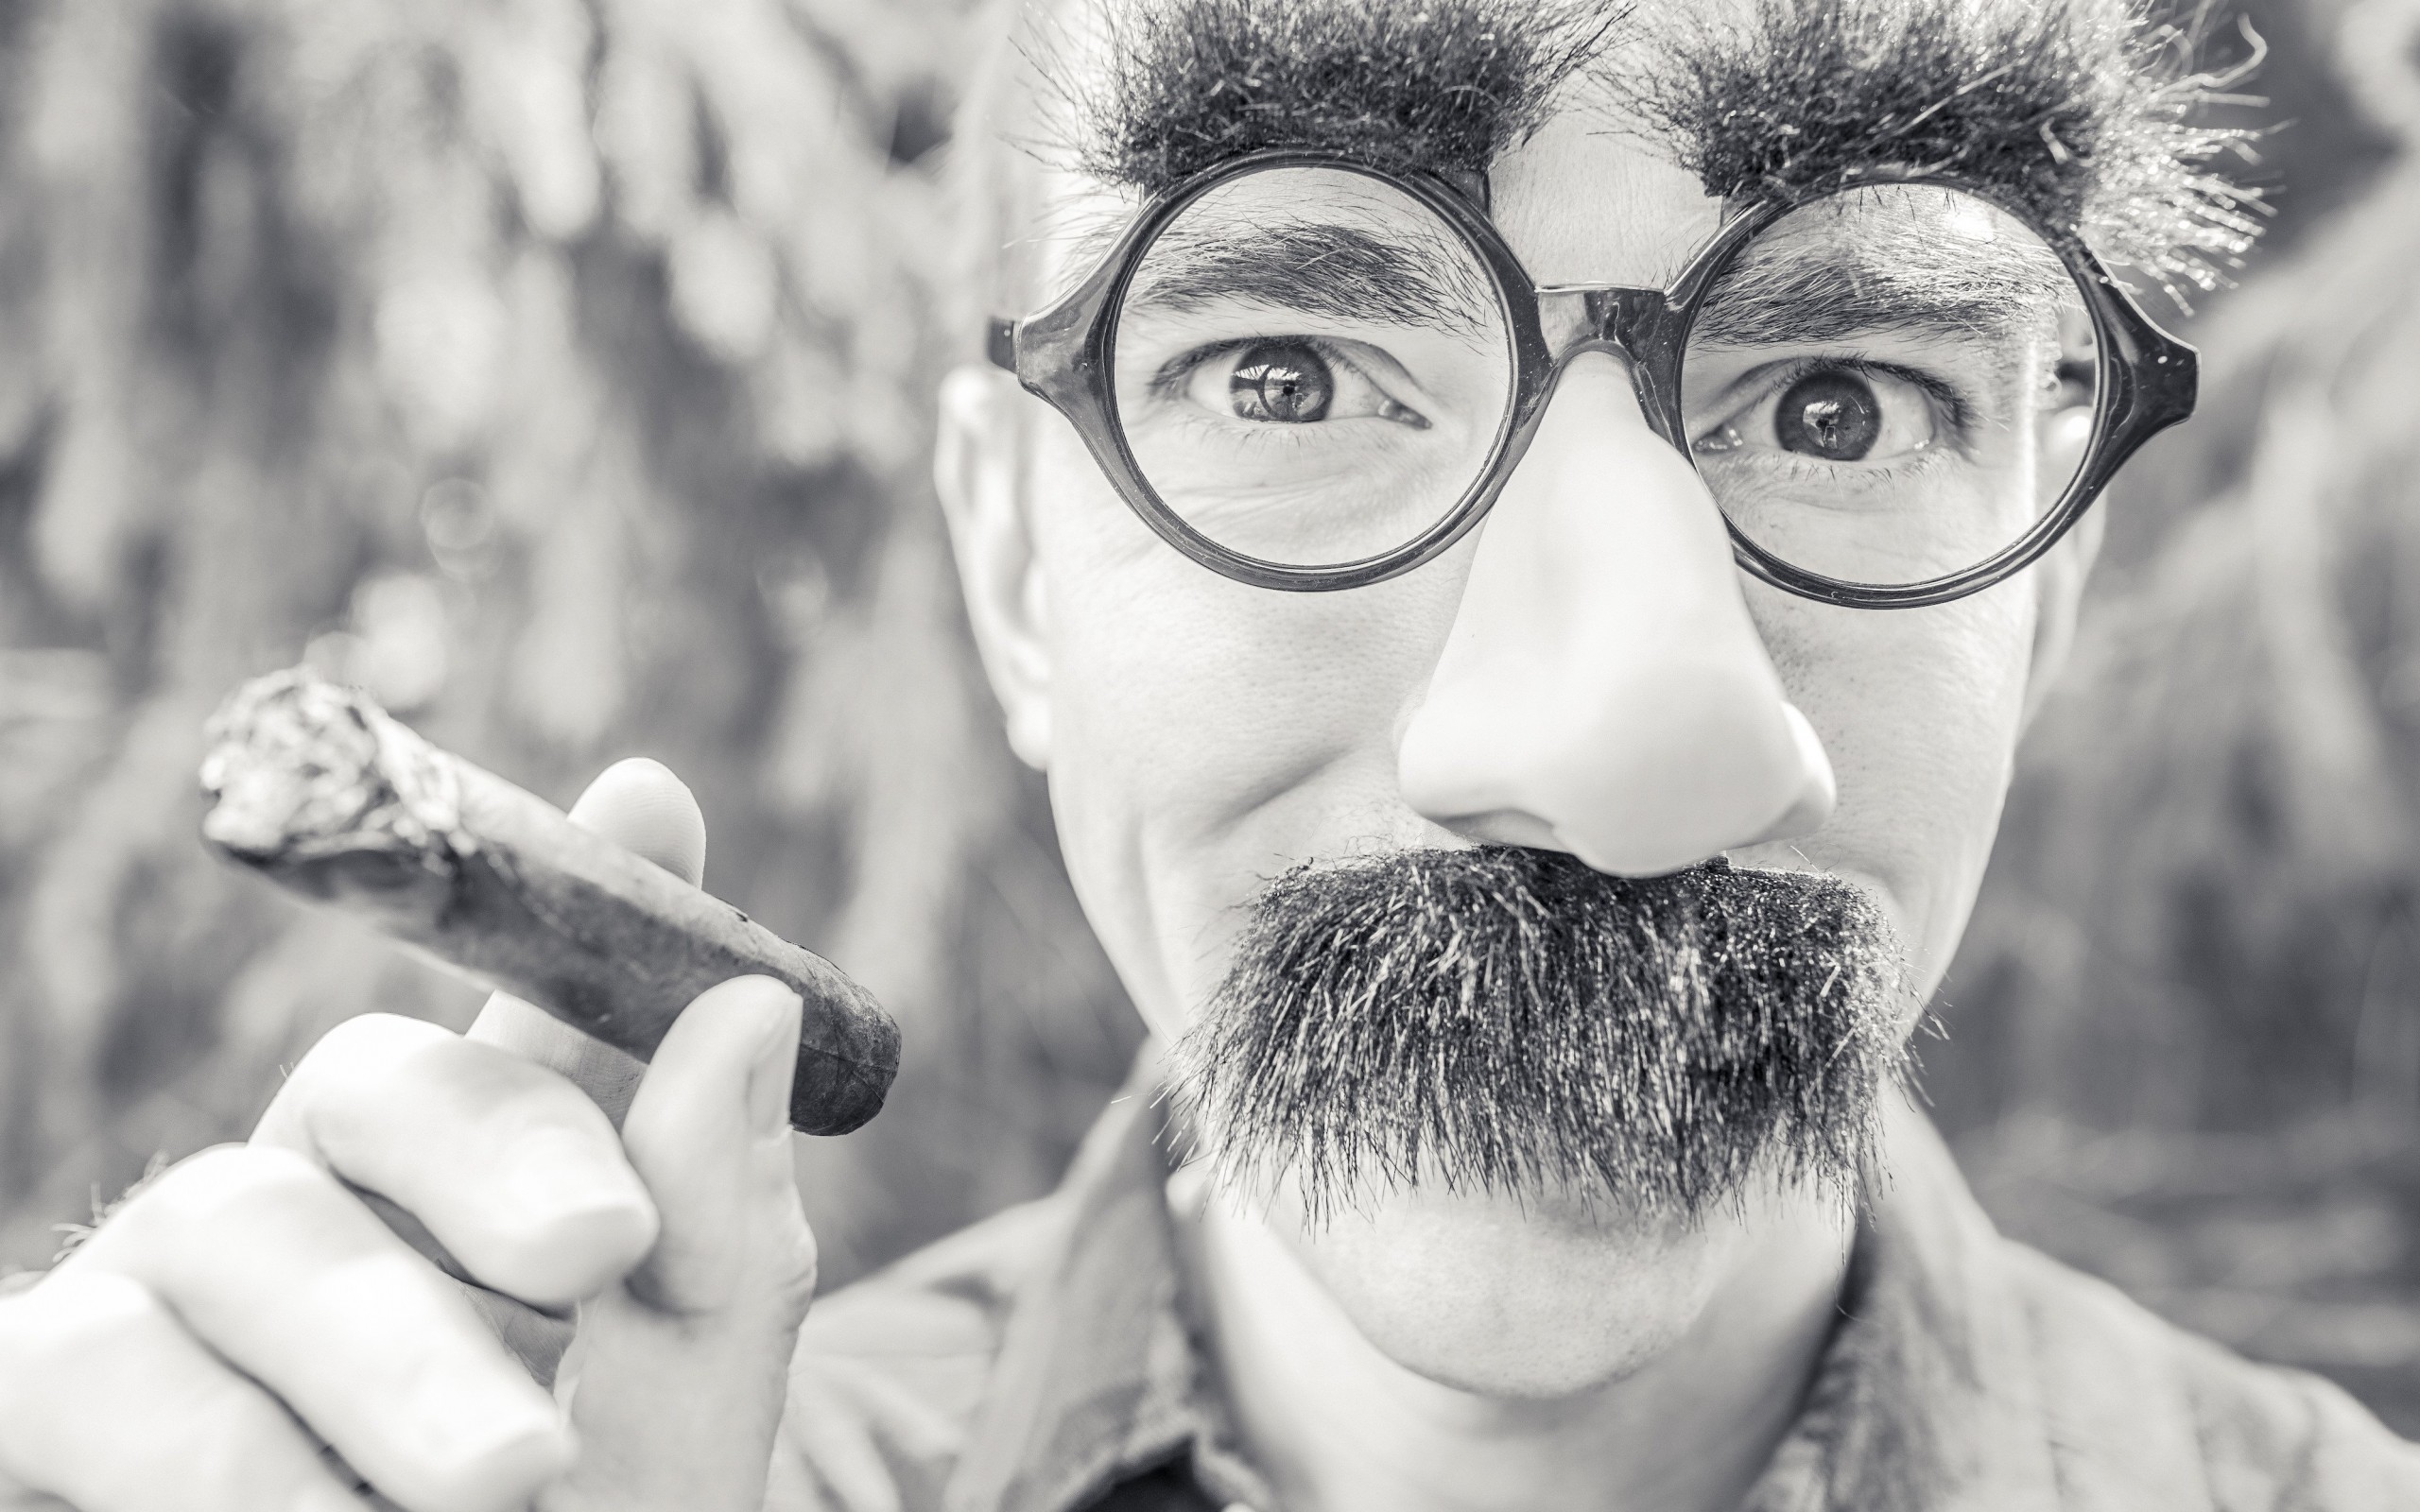 Groucho Glasses Man Wallpaper for Desktop 2560x1600